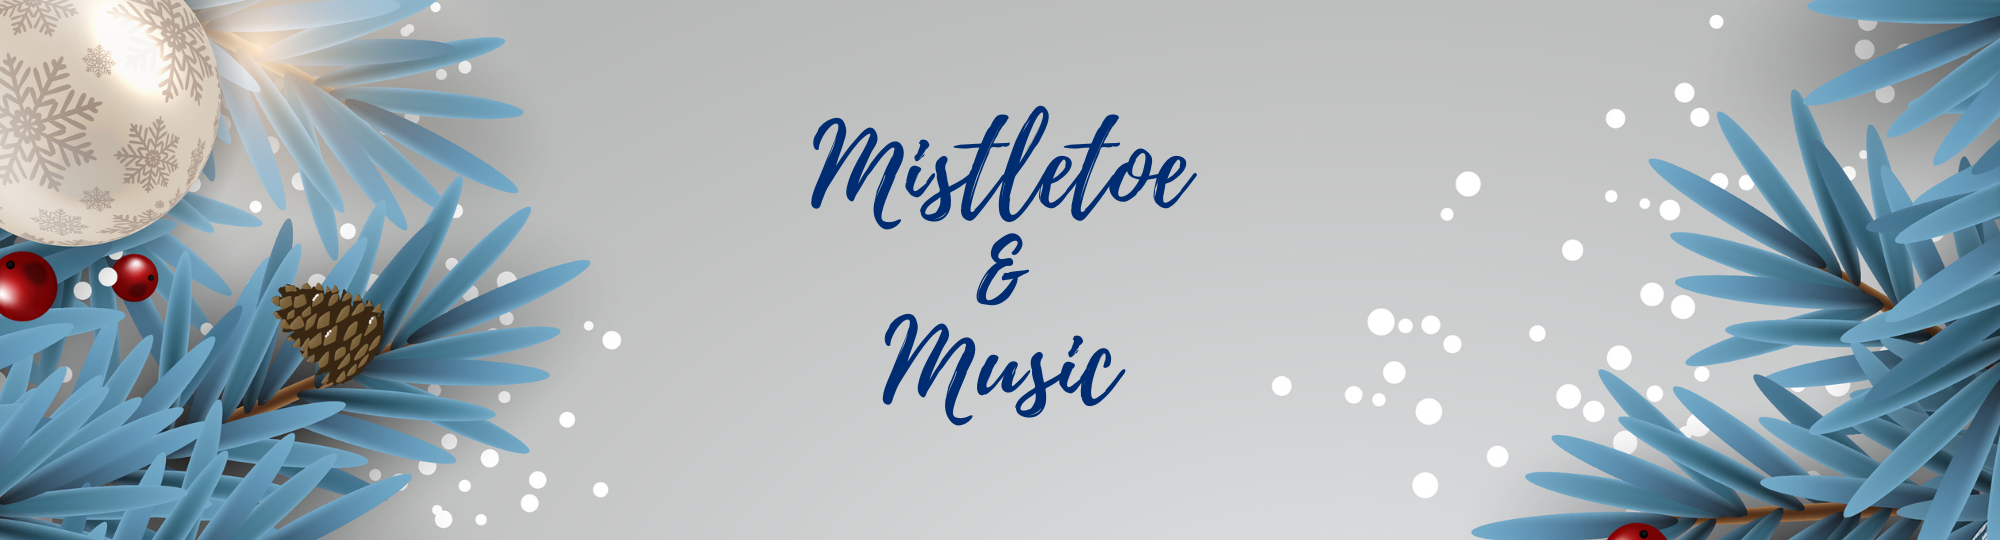 Mistletoe and Music Header Image